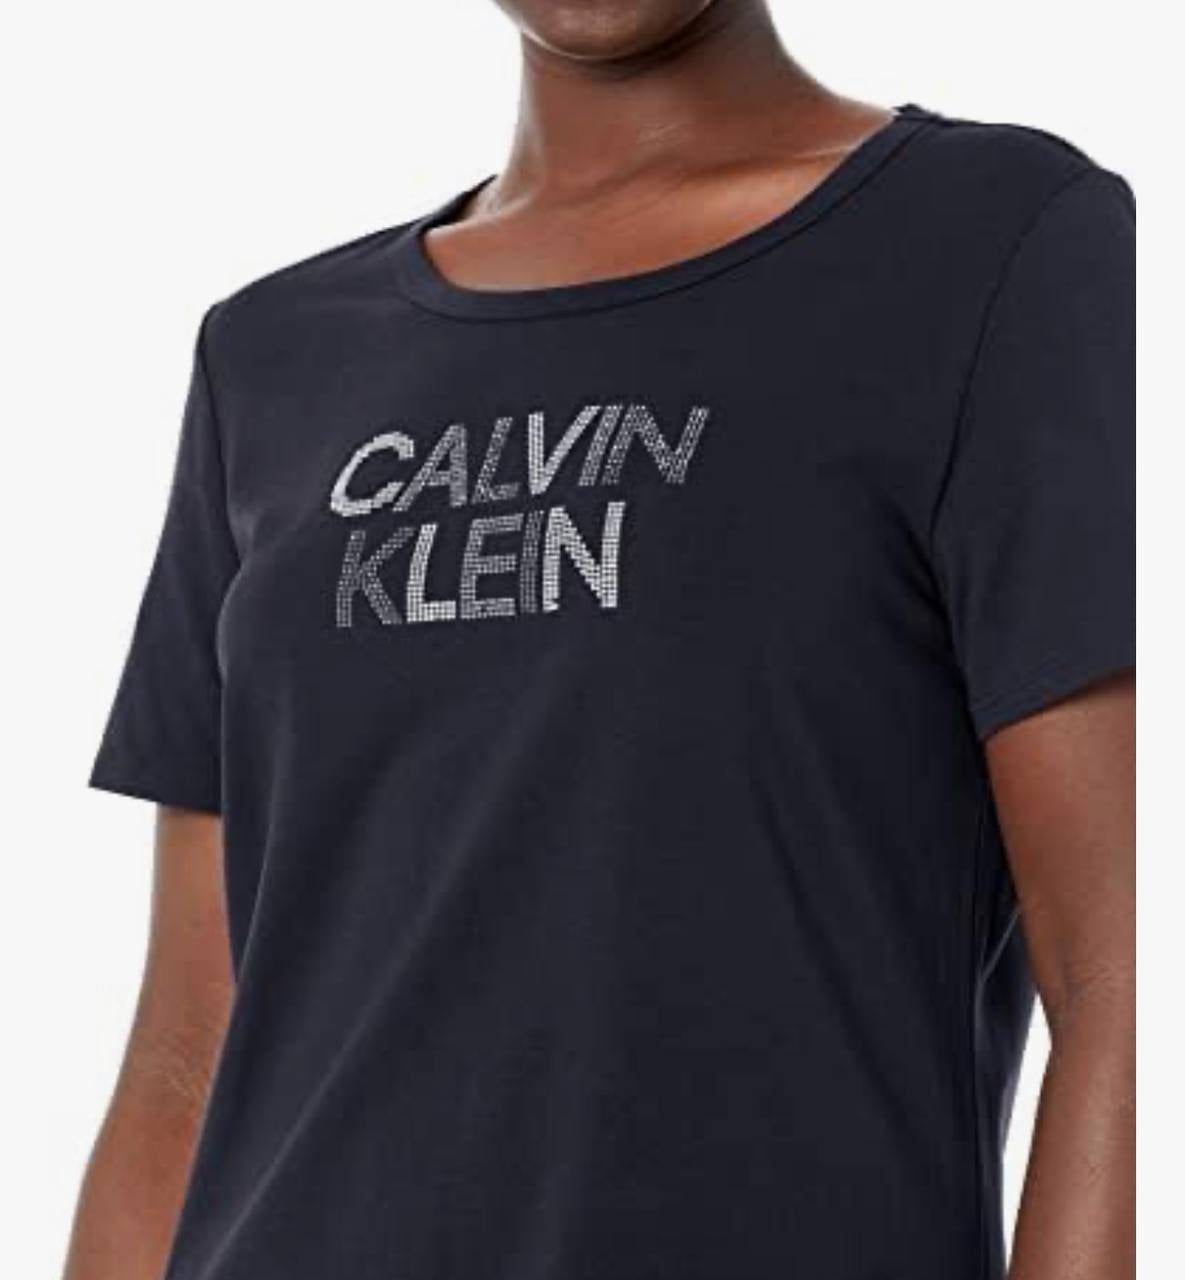 Calvin Klein dress shirt